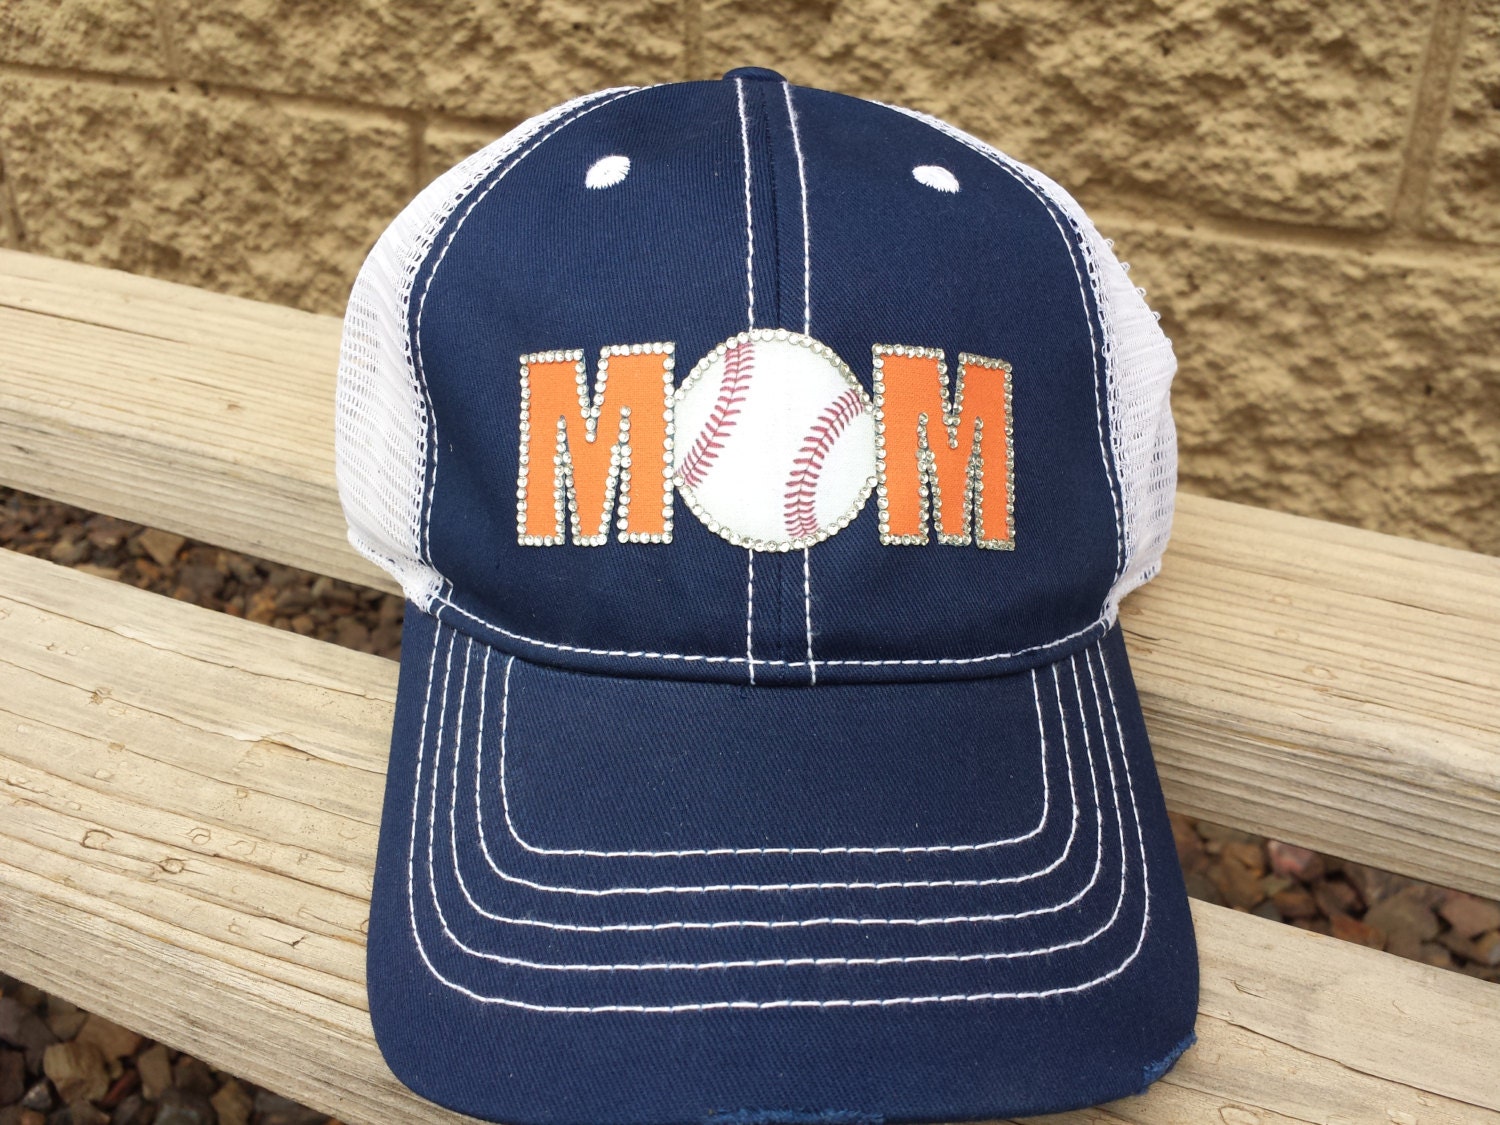 Rhinestone Baseball Mom Hat Orange and Navy Team by CapsbyKari